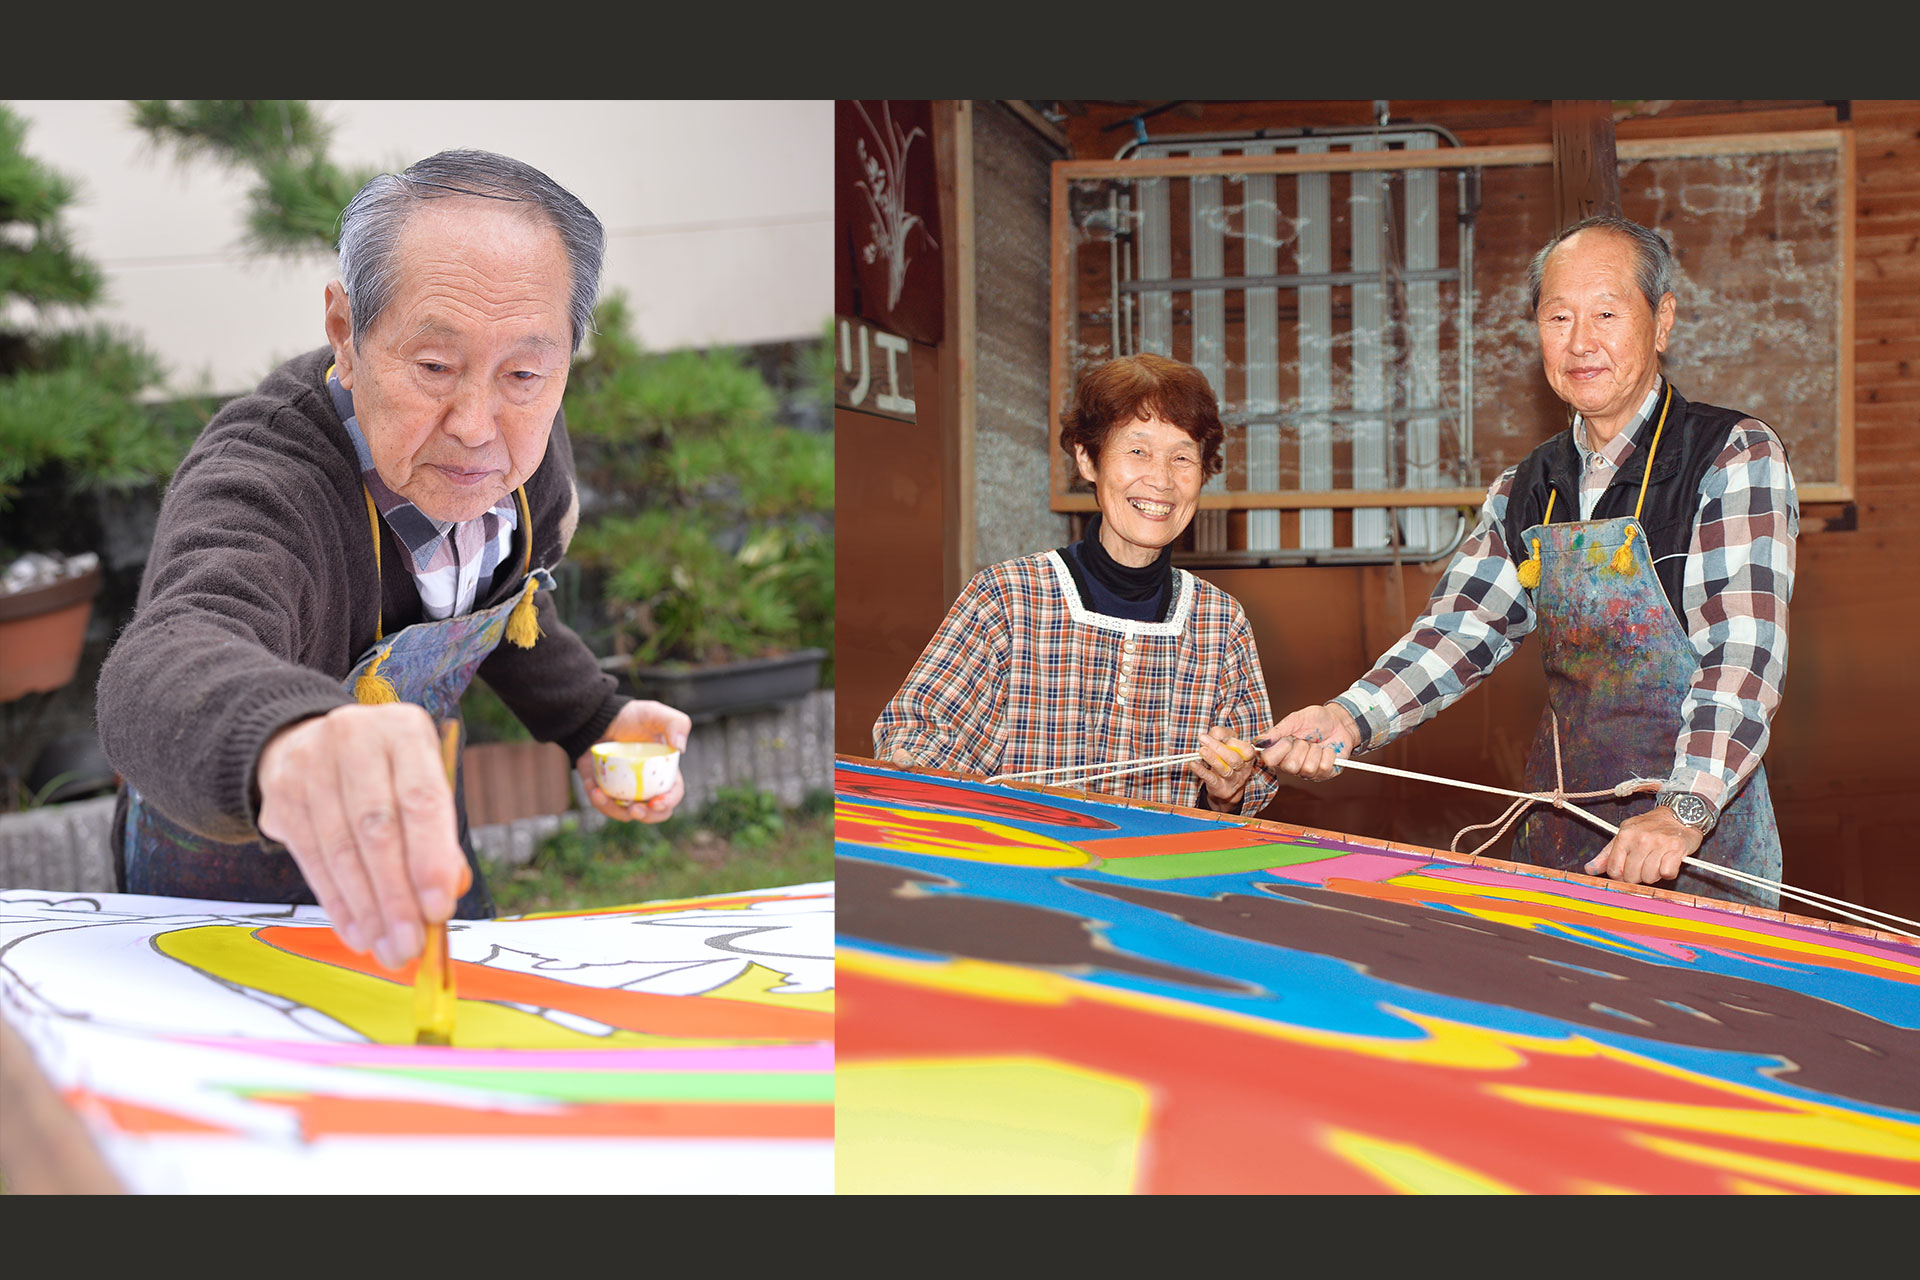 「素材と心通わせ技磨く」 宮崎の「一刻者」伝統工芸の技を守り受け継ぐ職人の物語